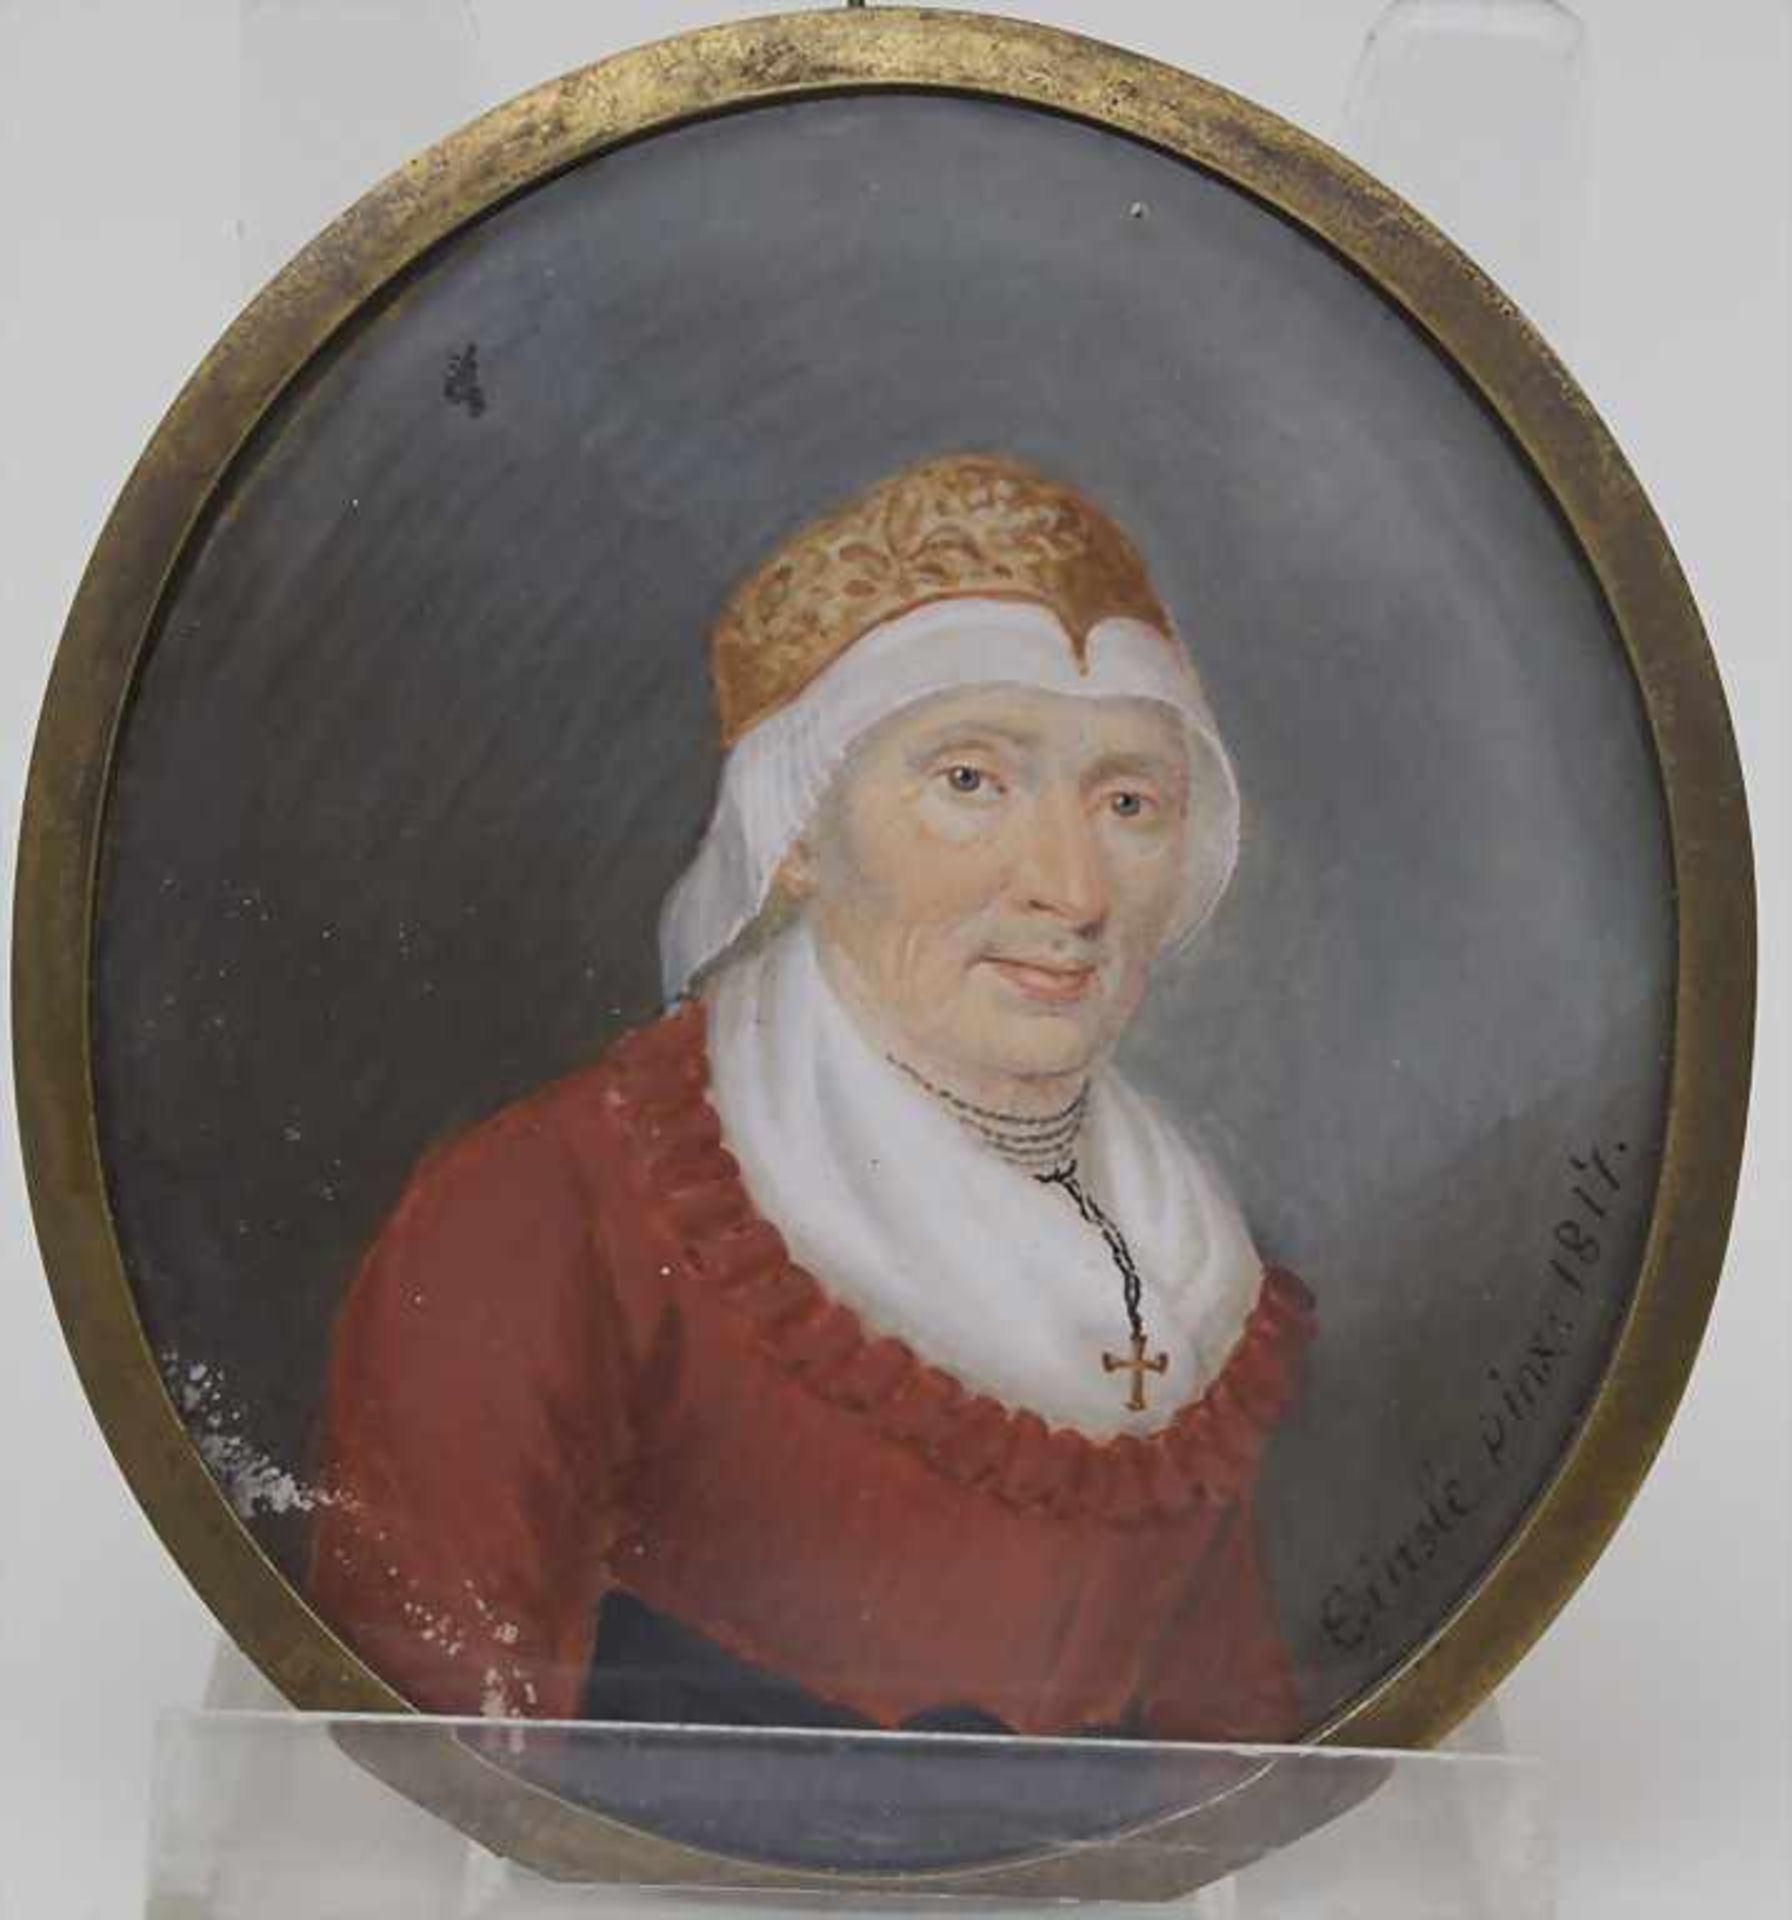 Josef Einsle (1794-c. 1850), 'Porträt einer alten Frau' / 'A portrait of an old woman'Technik: